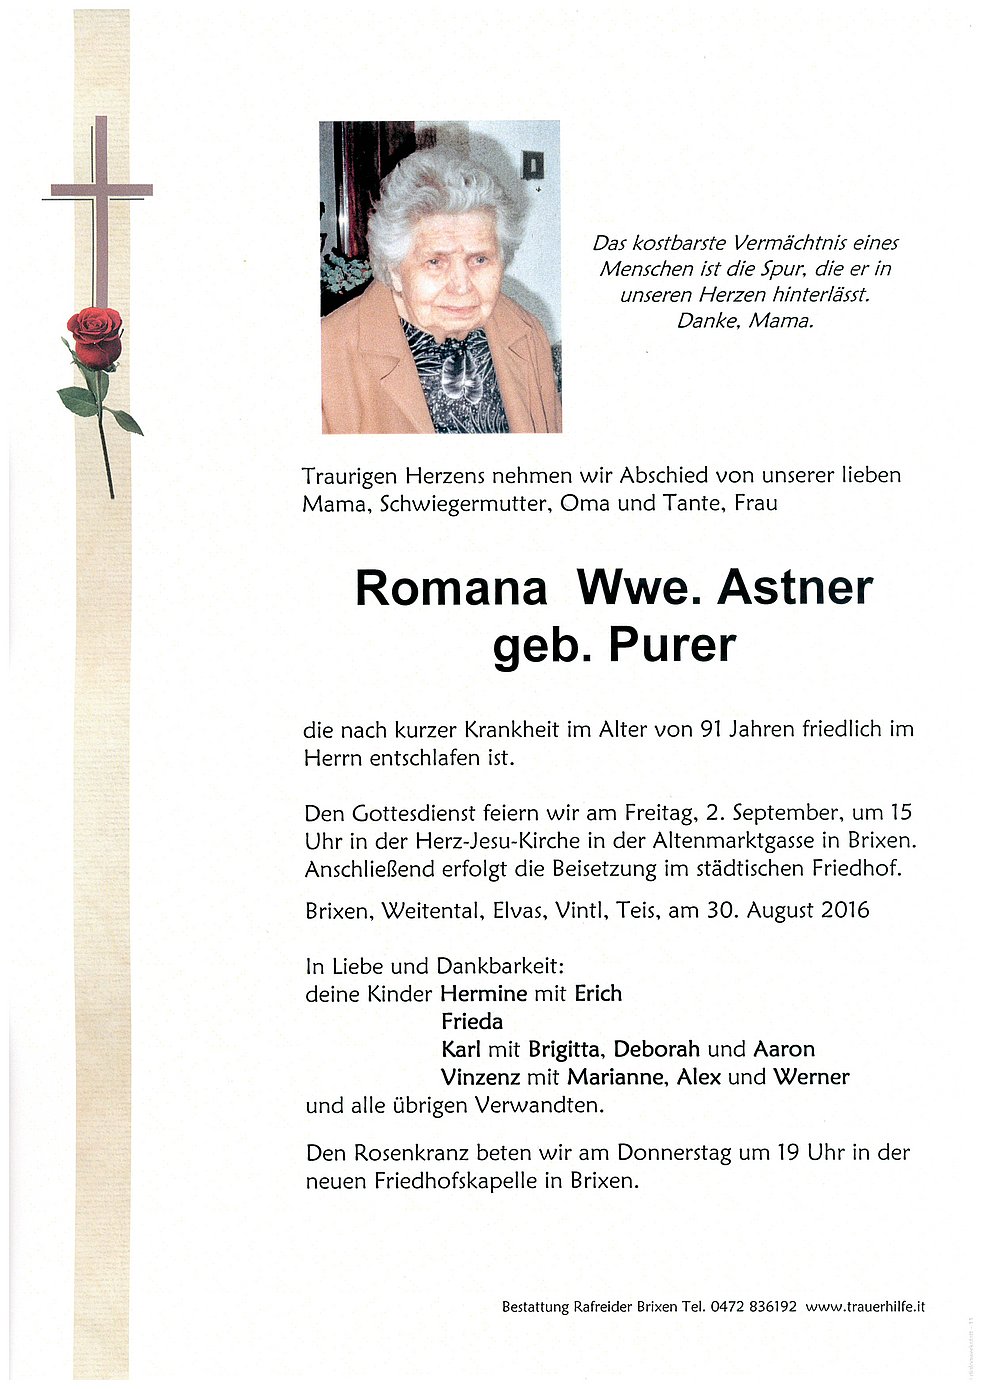 Romana Wwe Astner Aus Brixen Trauerhilfeit Das Südtiroler Gedenkportal 